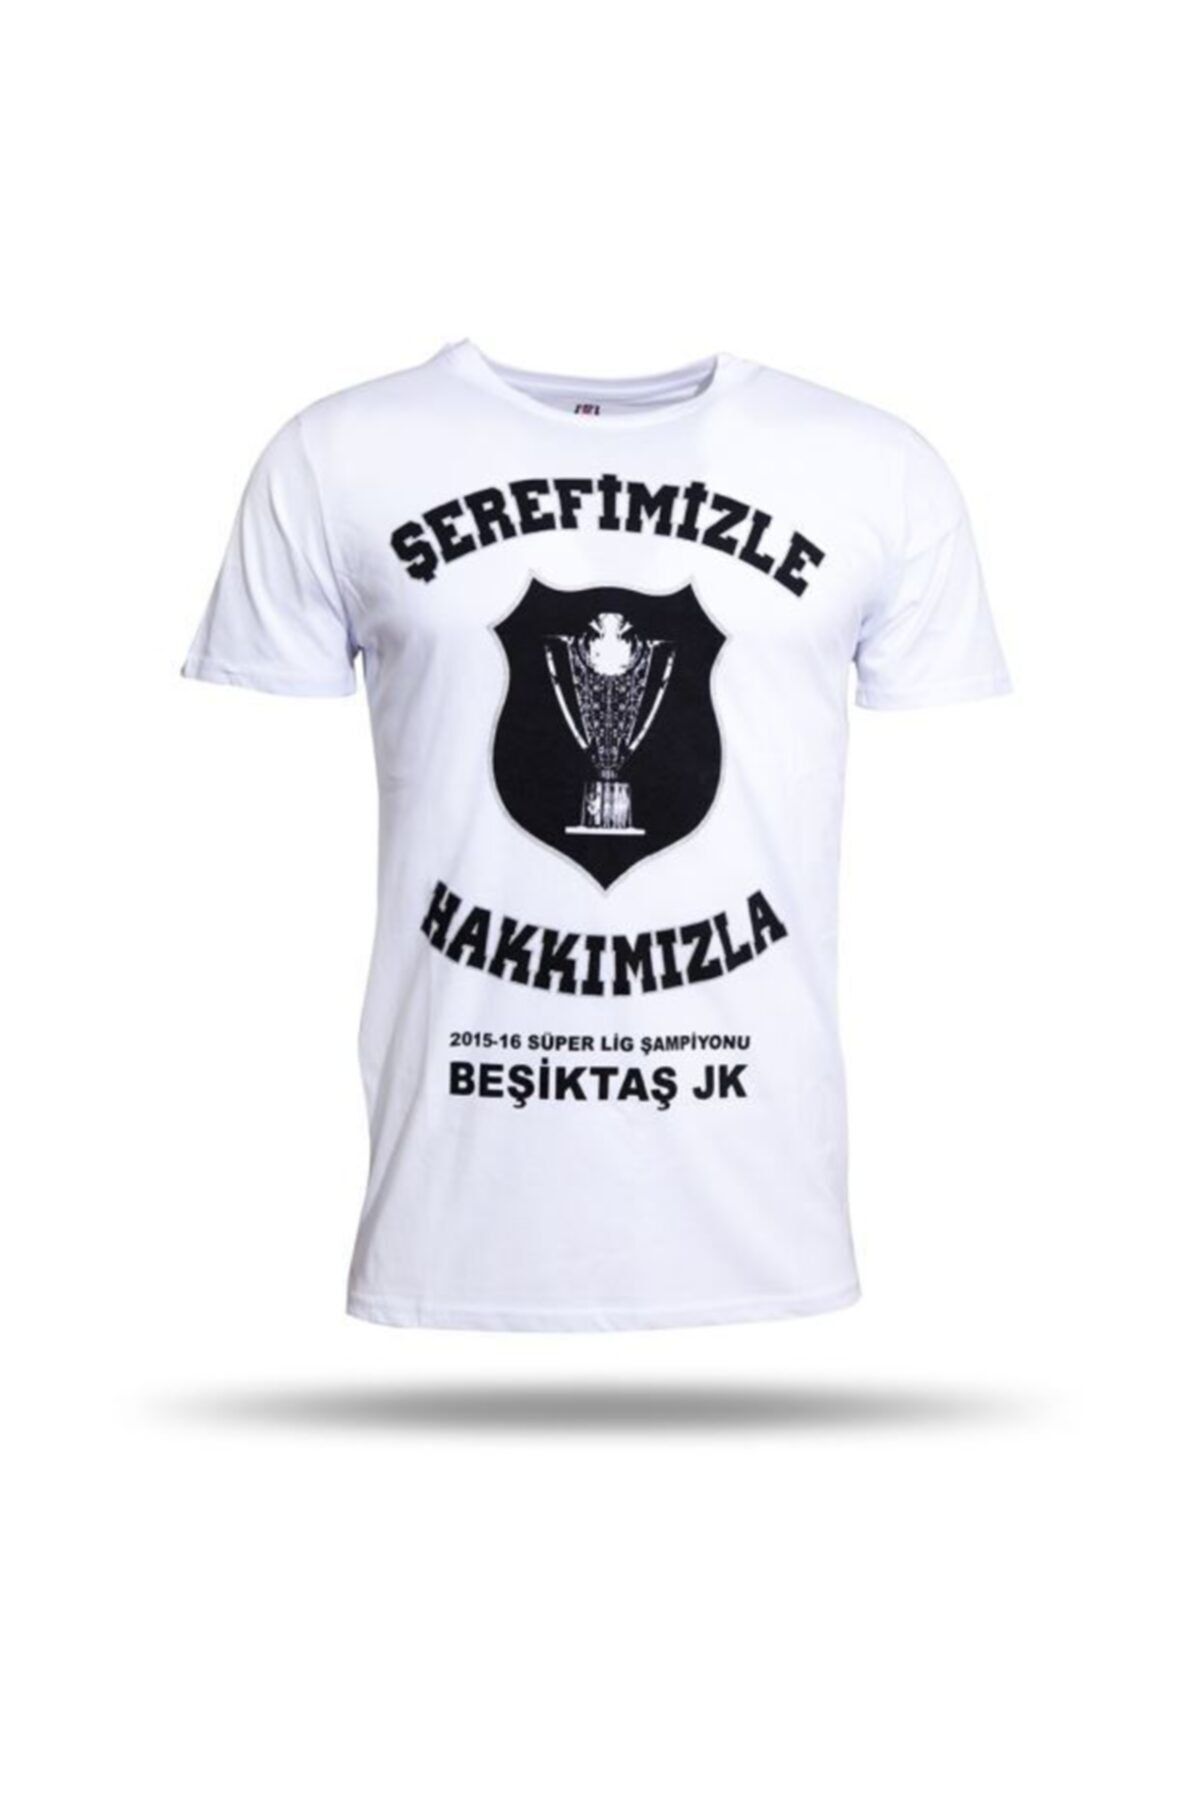 Beşiktaş Beşiktaş Şampiyonluk T-shırt